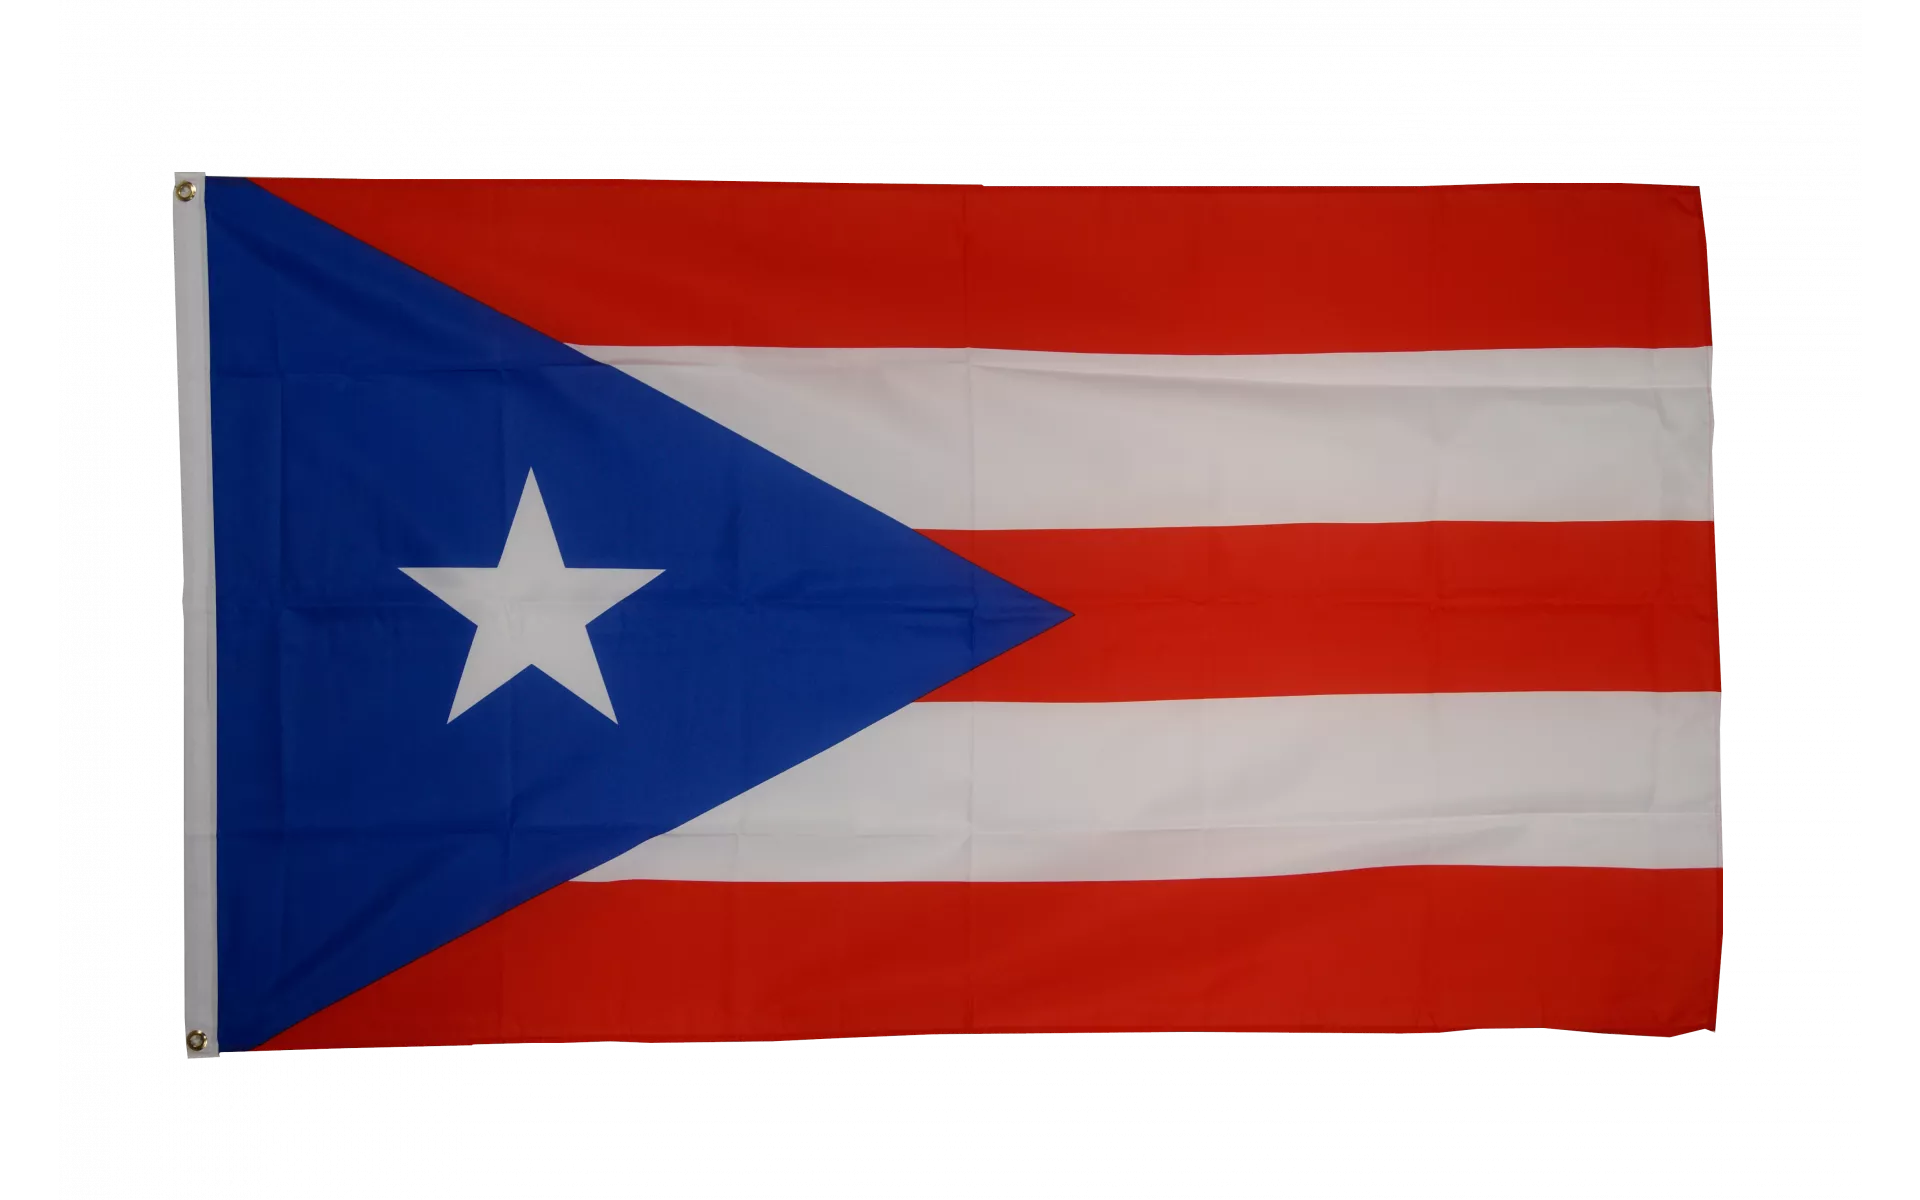 Fahnen Pin Puerto Rico Anstecker Flagge Fahne